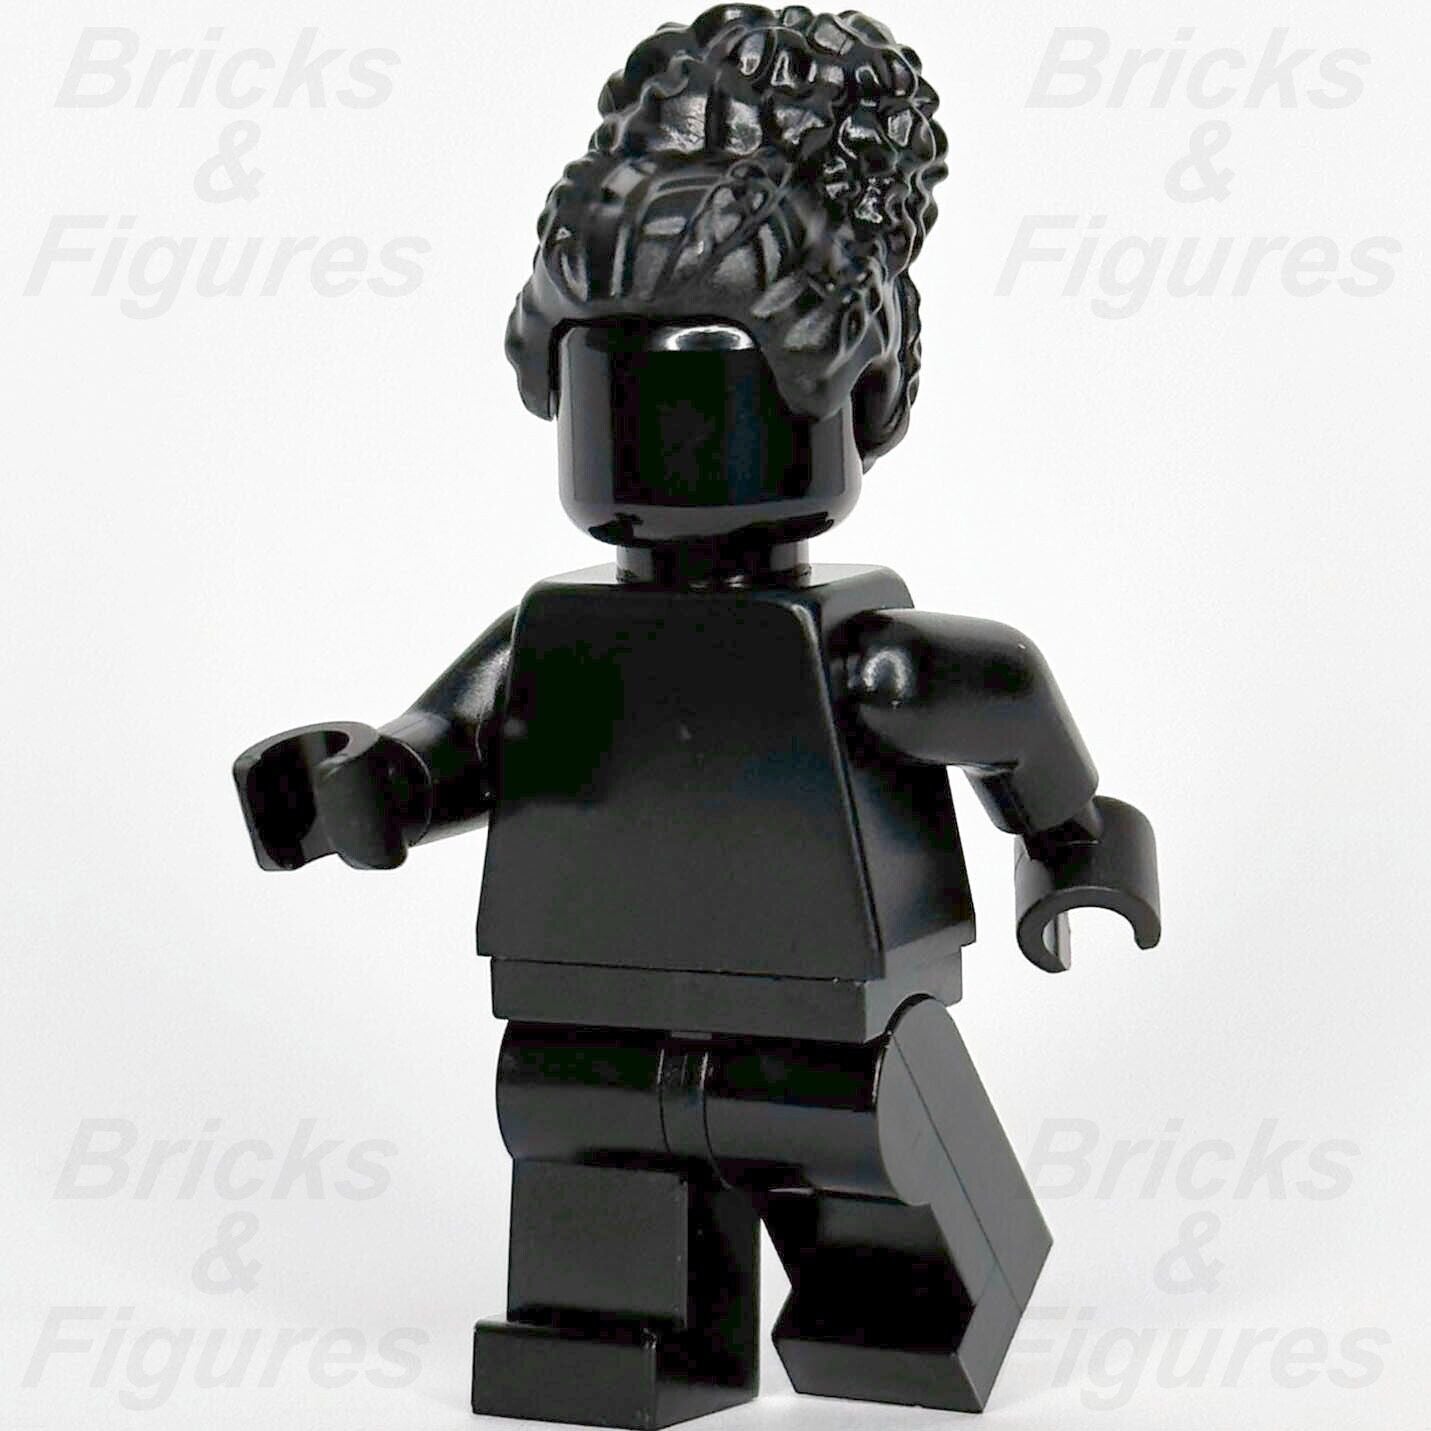 レゴ みんなすごい ブラック ミニフィギュア モノクロ 40516 ミニフィグ tls100